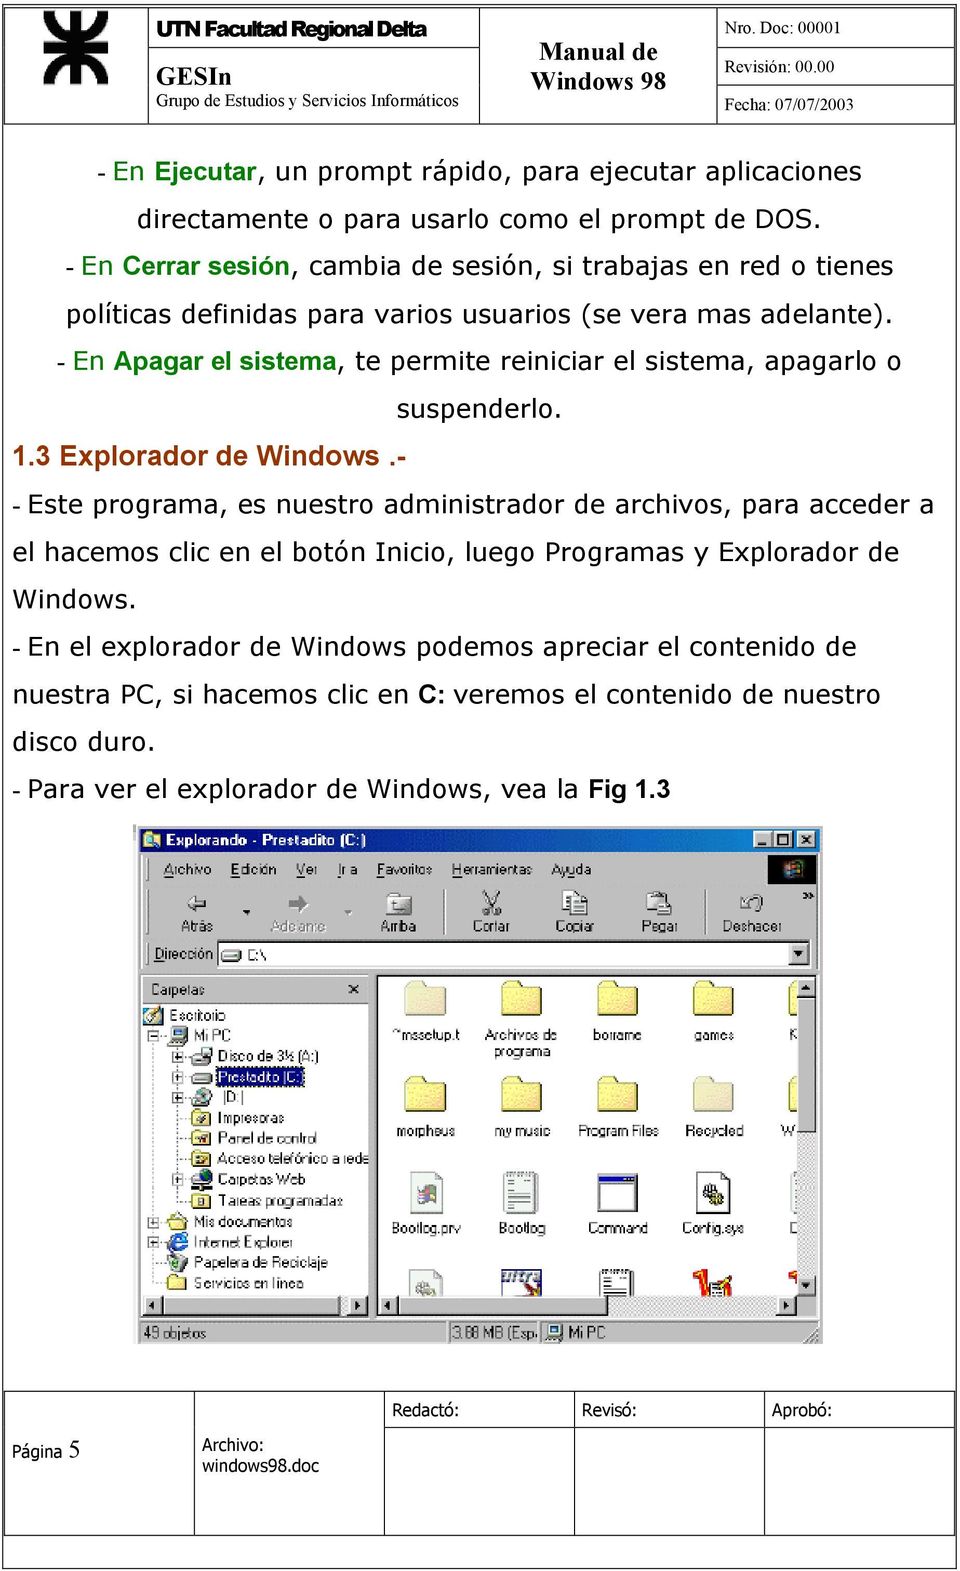 - En Apagar el sistema, te permite reiniciar el sistema, apagarlo o suspenderlo. 1.3 Explorador de Windows.